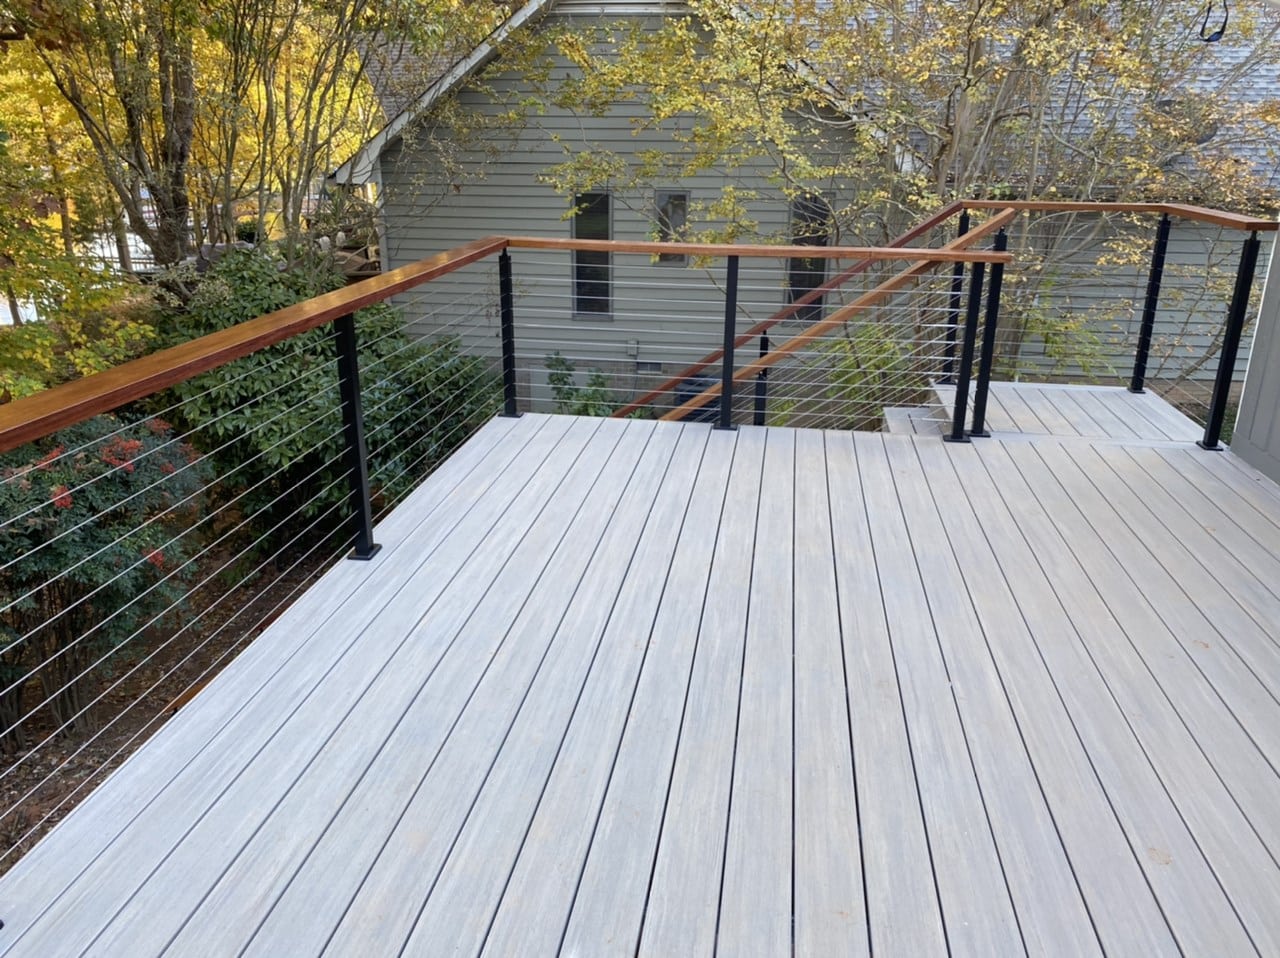 wooden deck